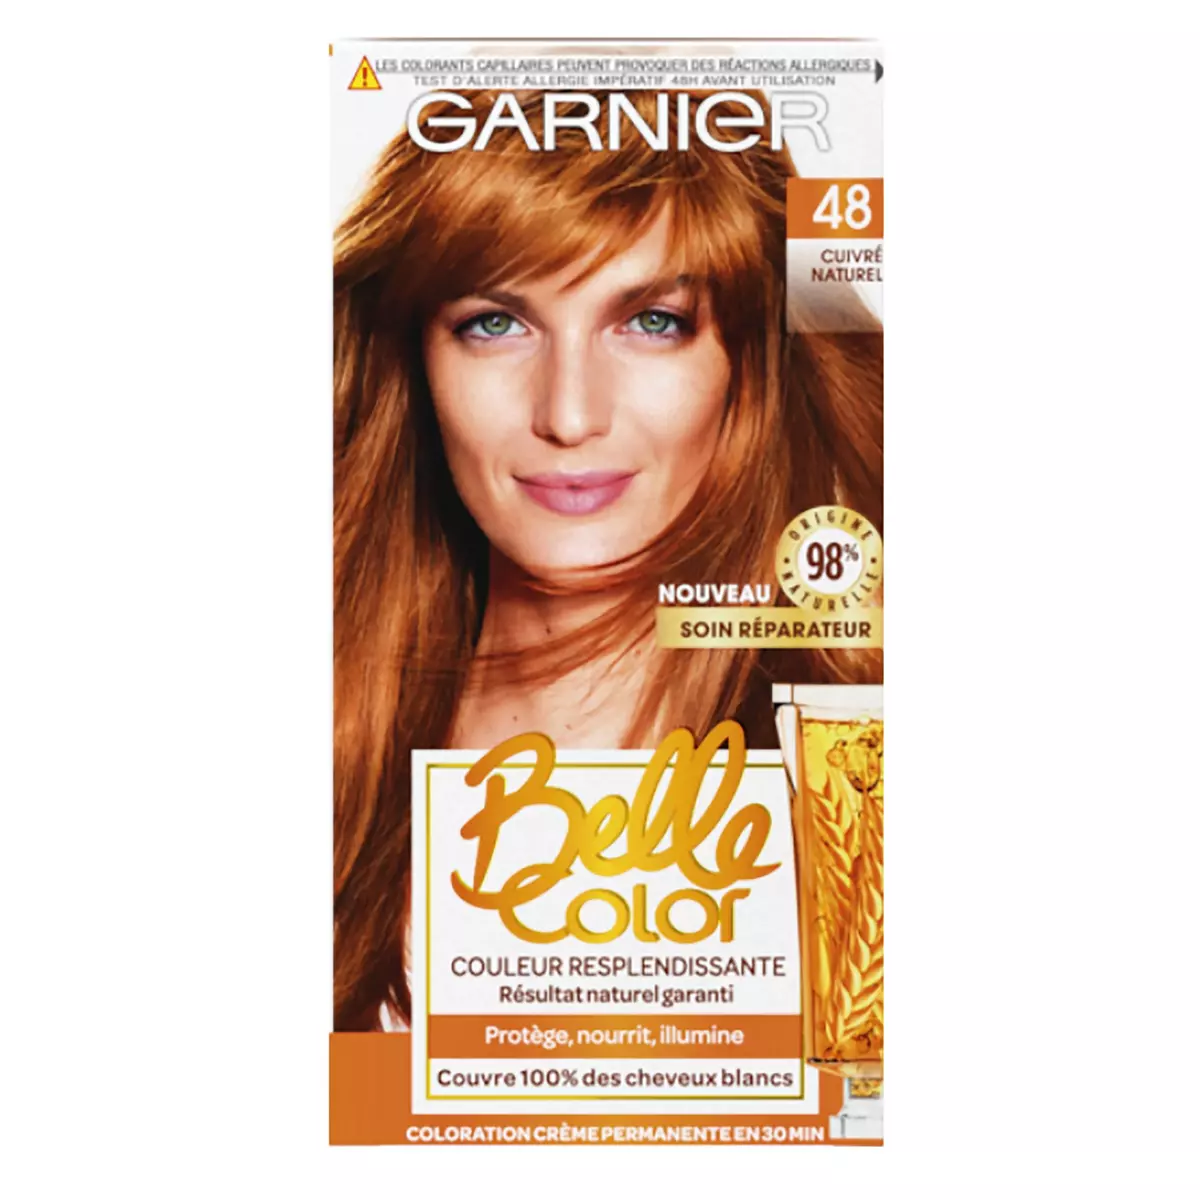 GARNIER Belle Color Coloration permanente cuivré naturel 48 3 produits 1 kit